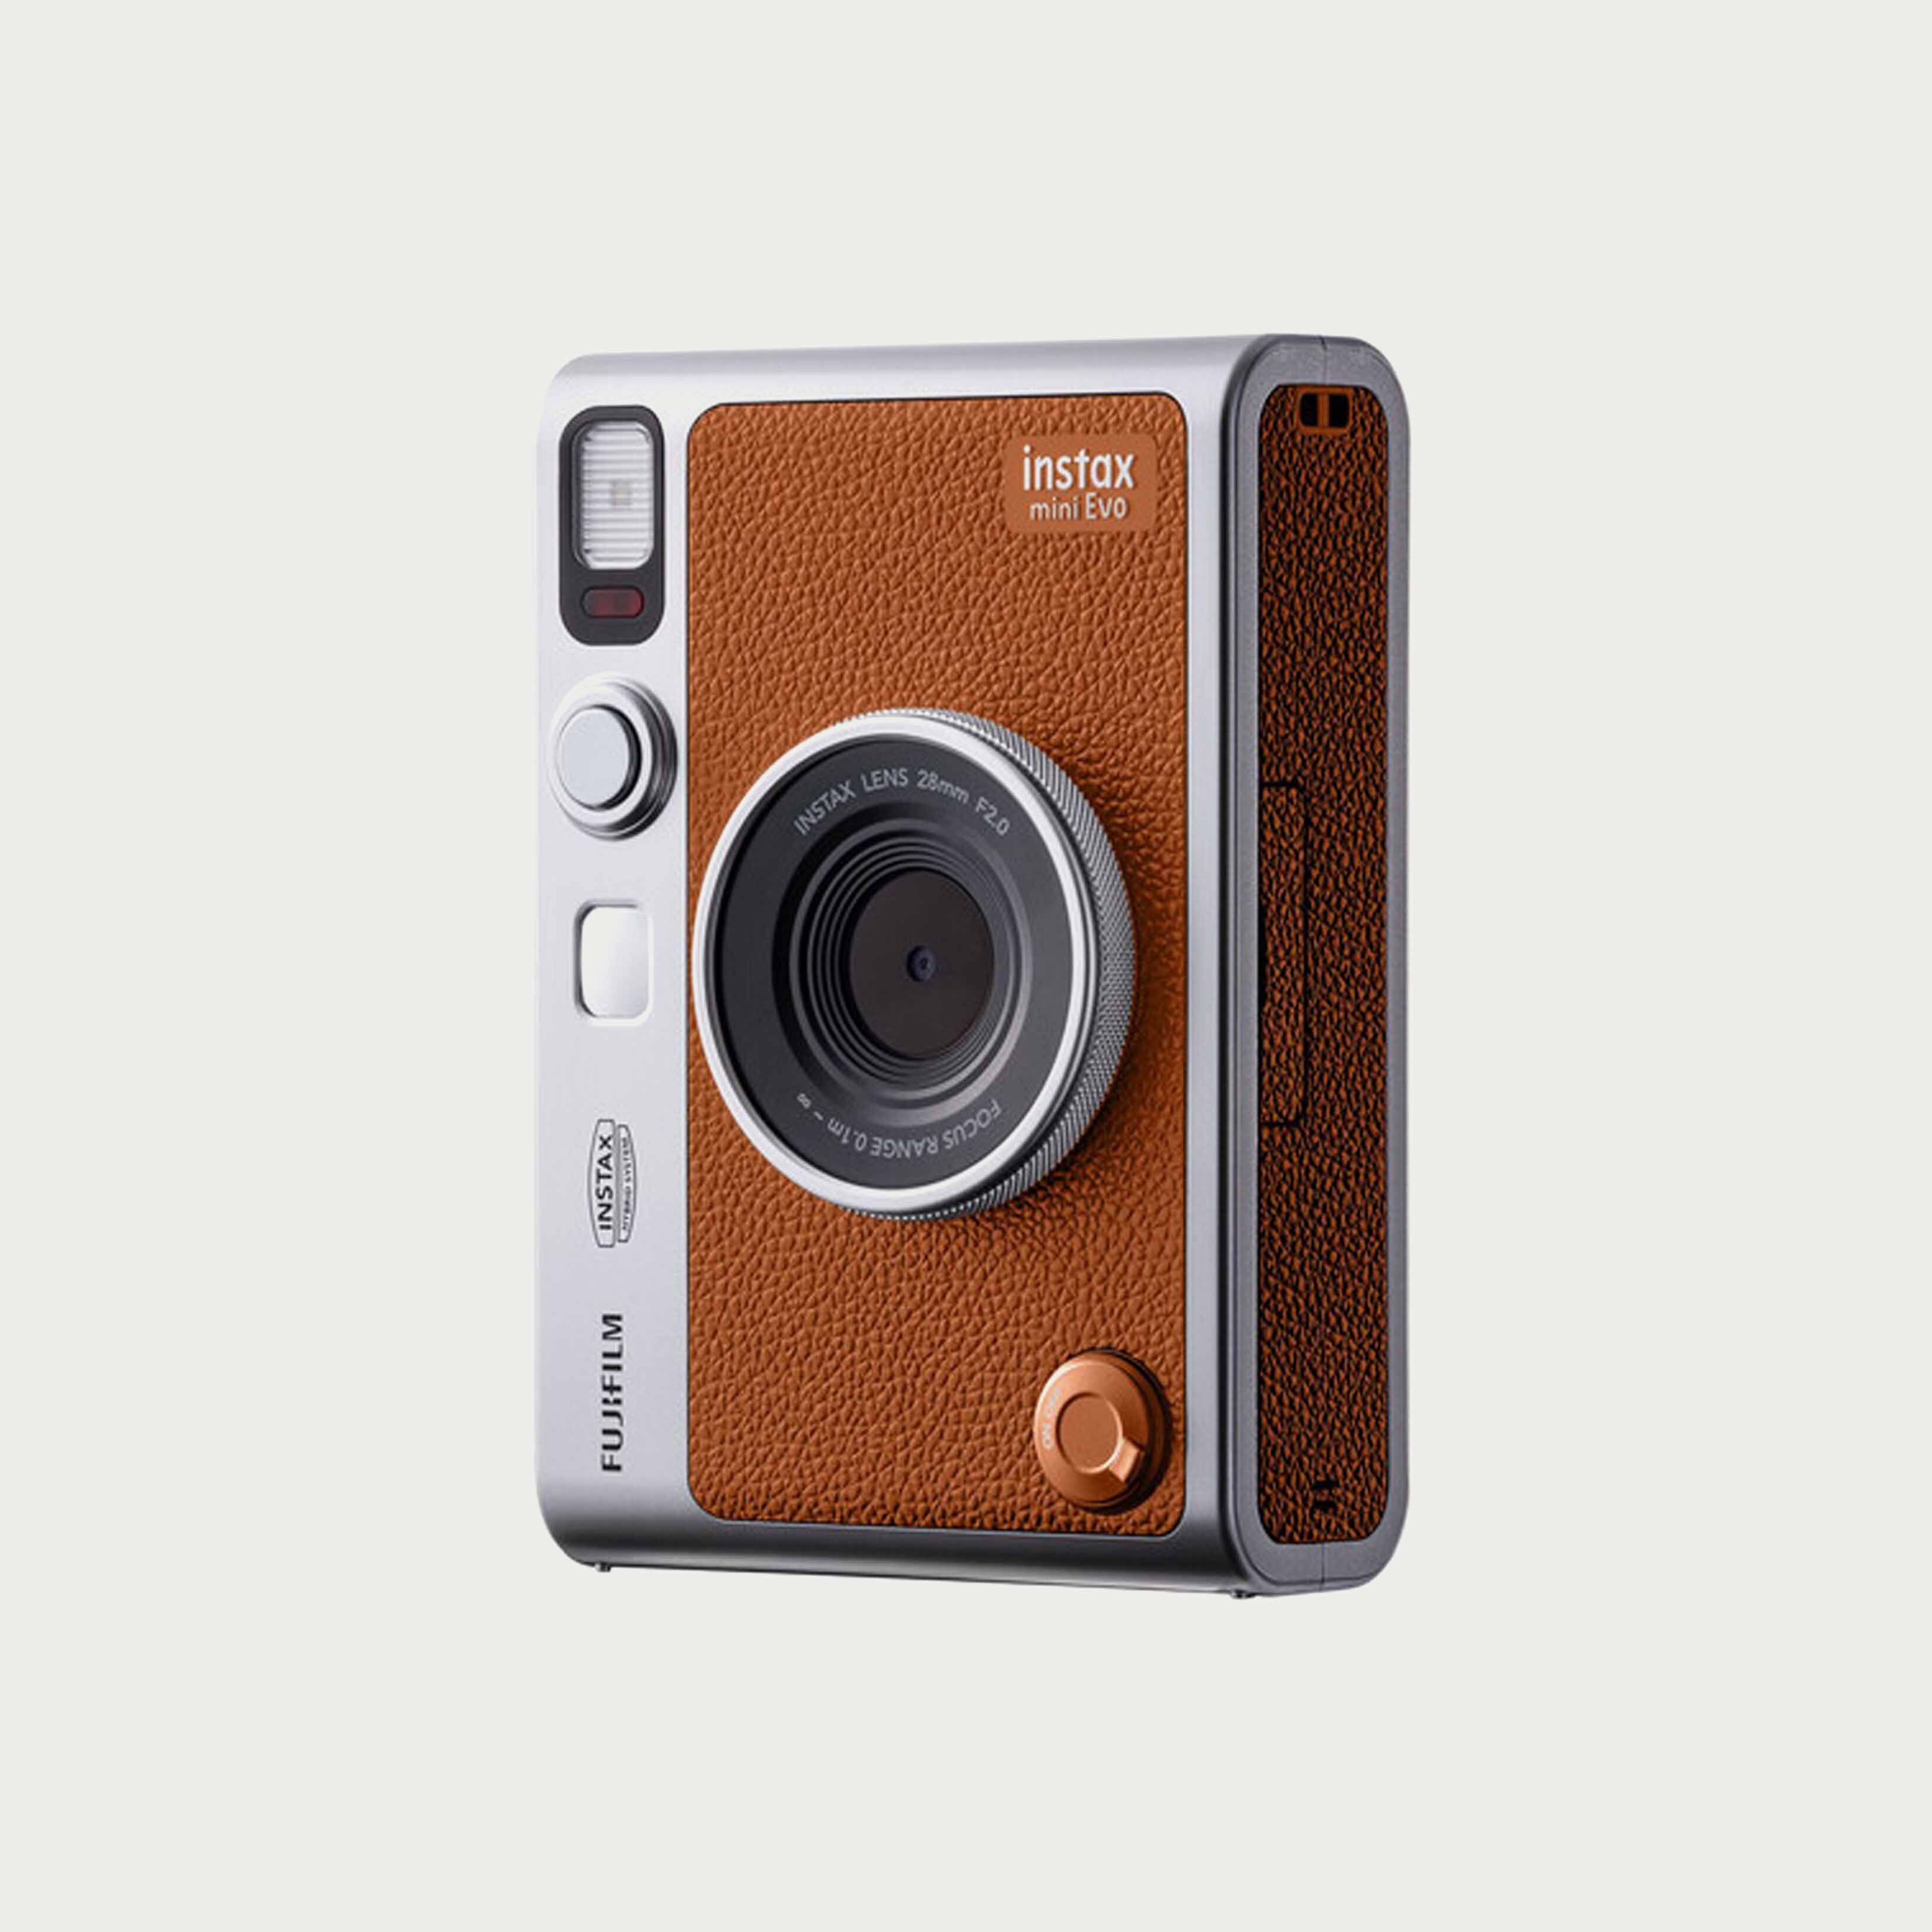 Fujifilm Instax Mini Evo Hybrid Instant Camera - Brown | Moment